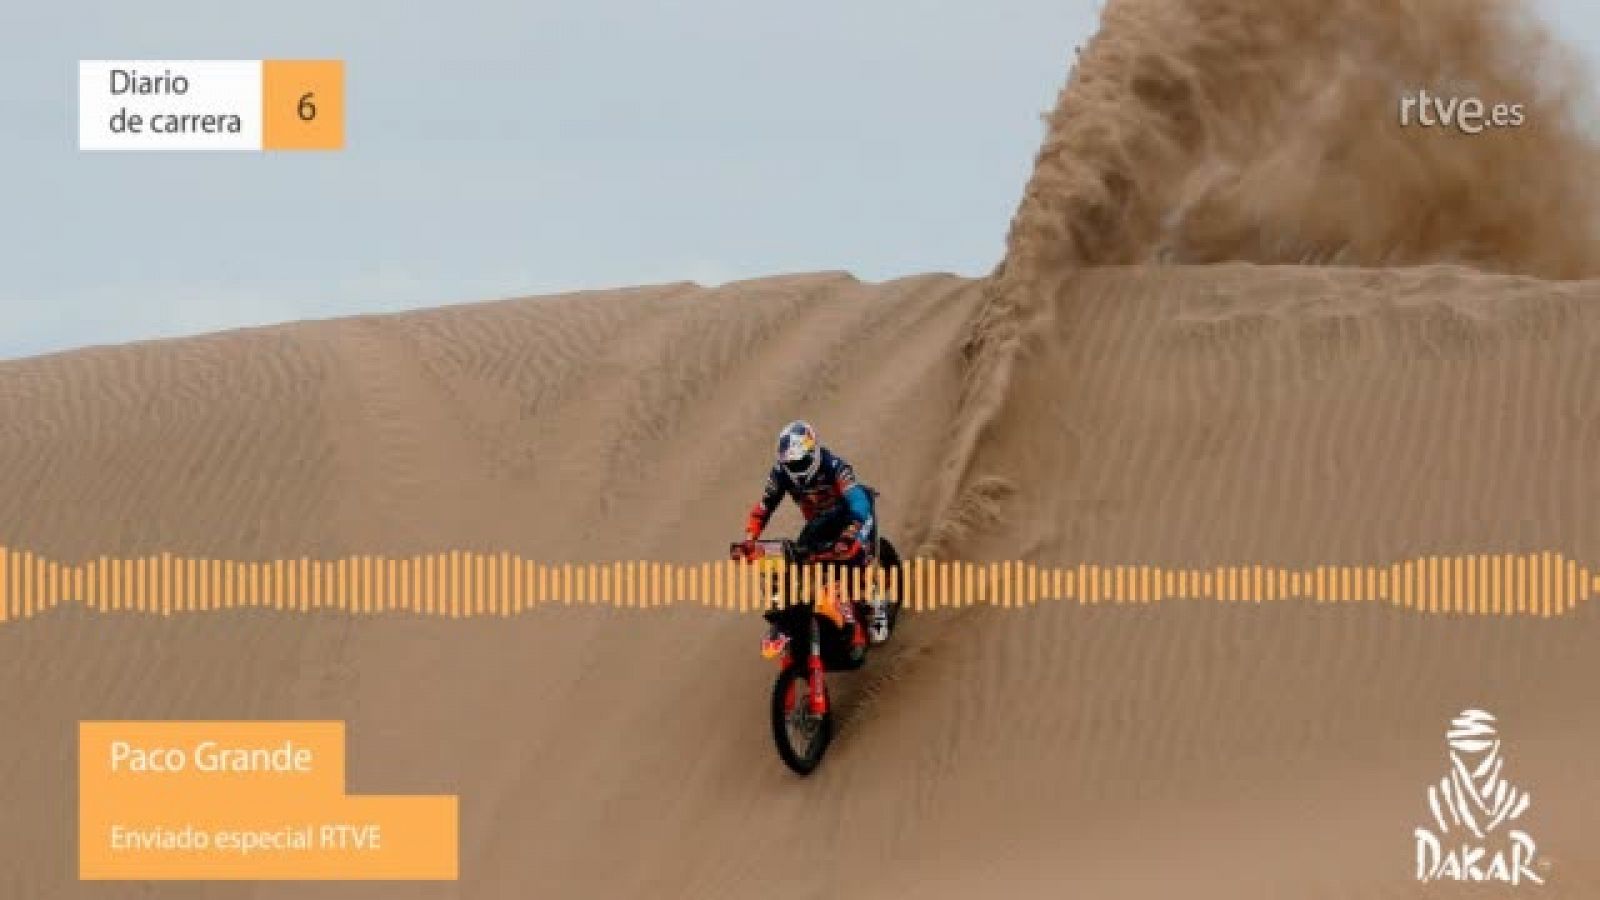 Dakar 2019. Diario de Carrera. Etapa 6 - RTVE.ES